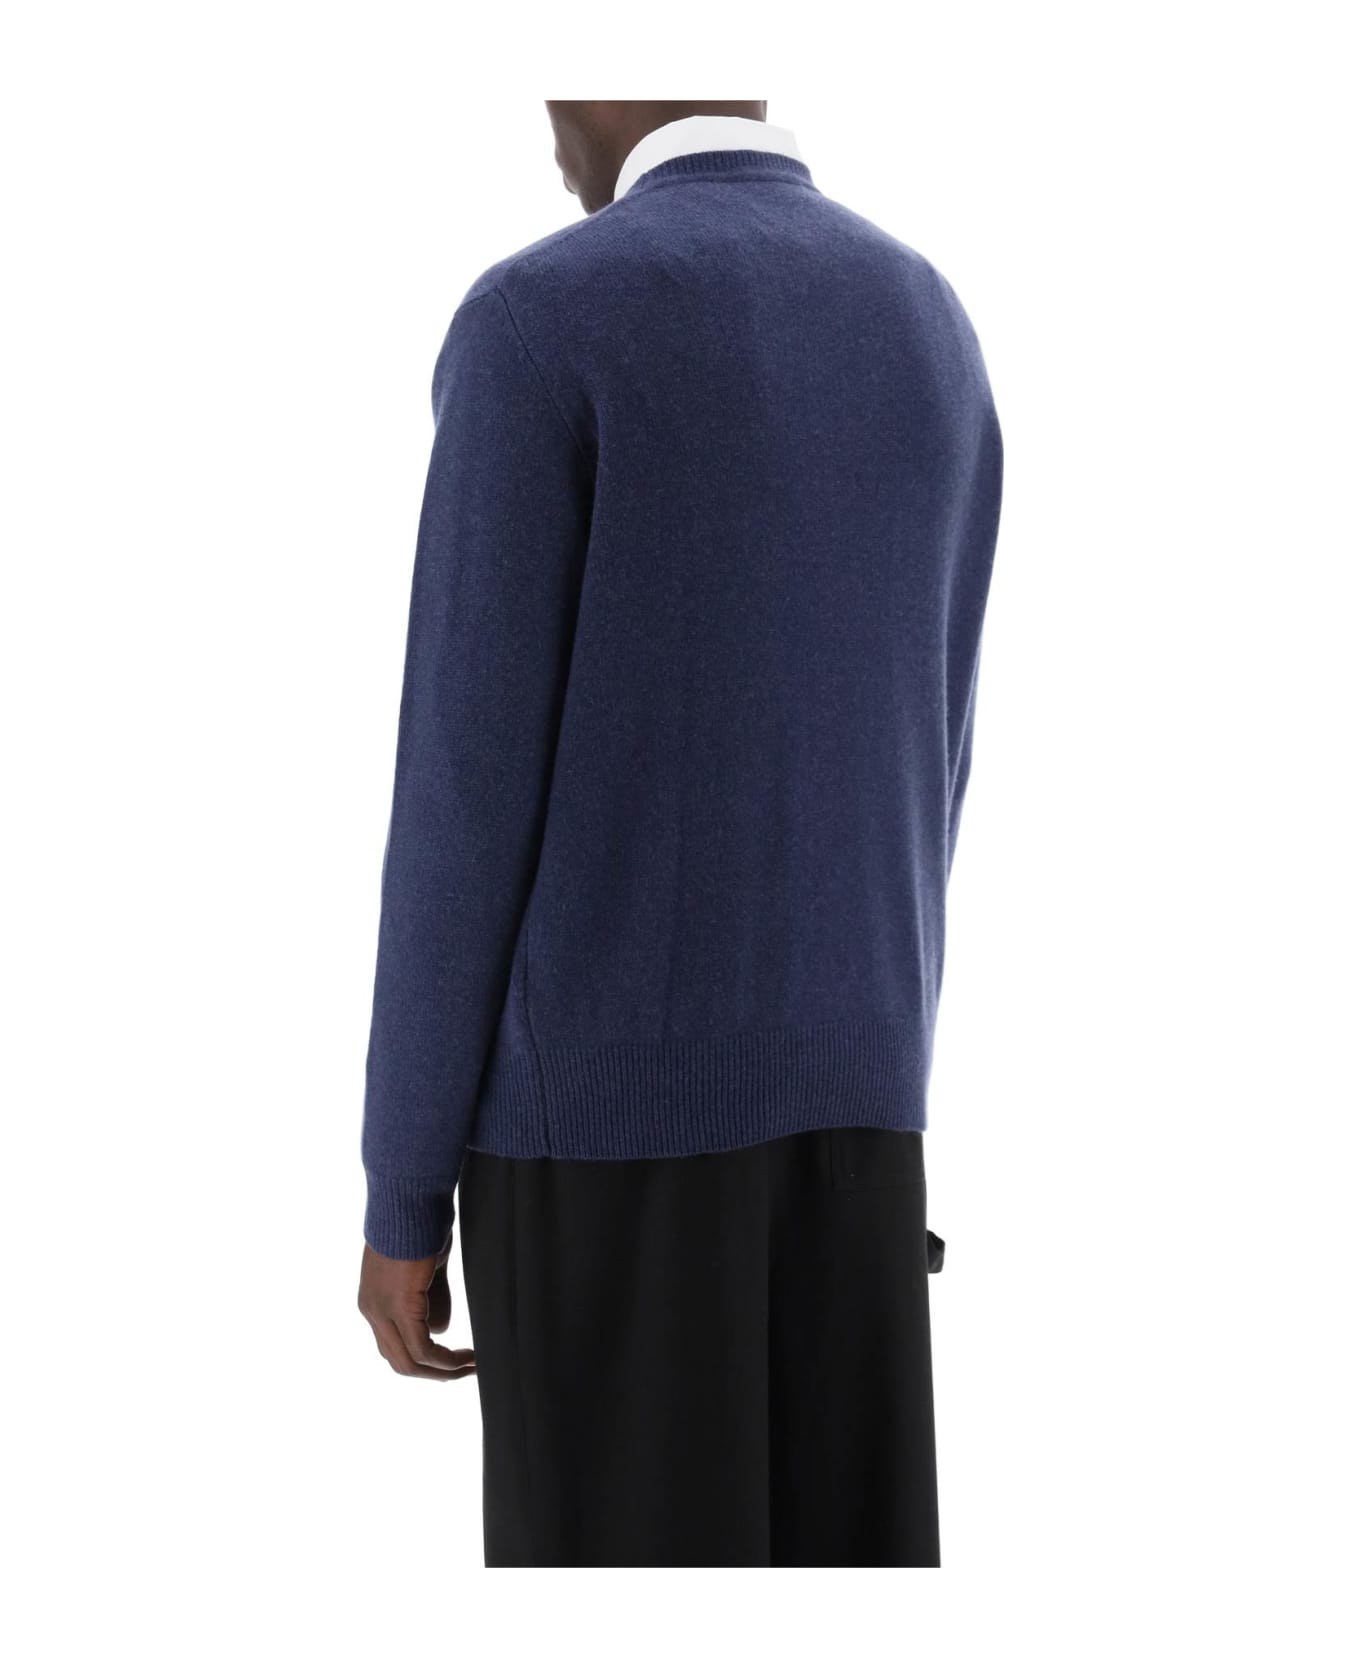 Vivienne Westwood Alex Merino Wool Sweater - DENIM (Blue)